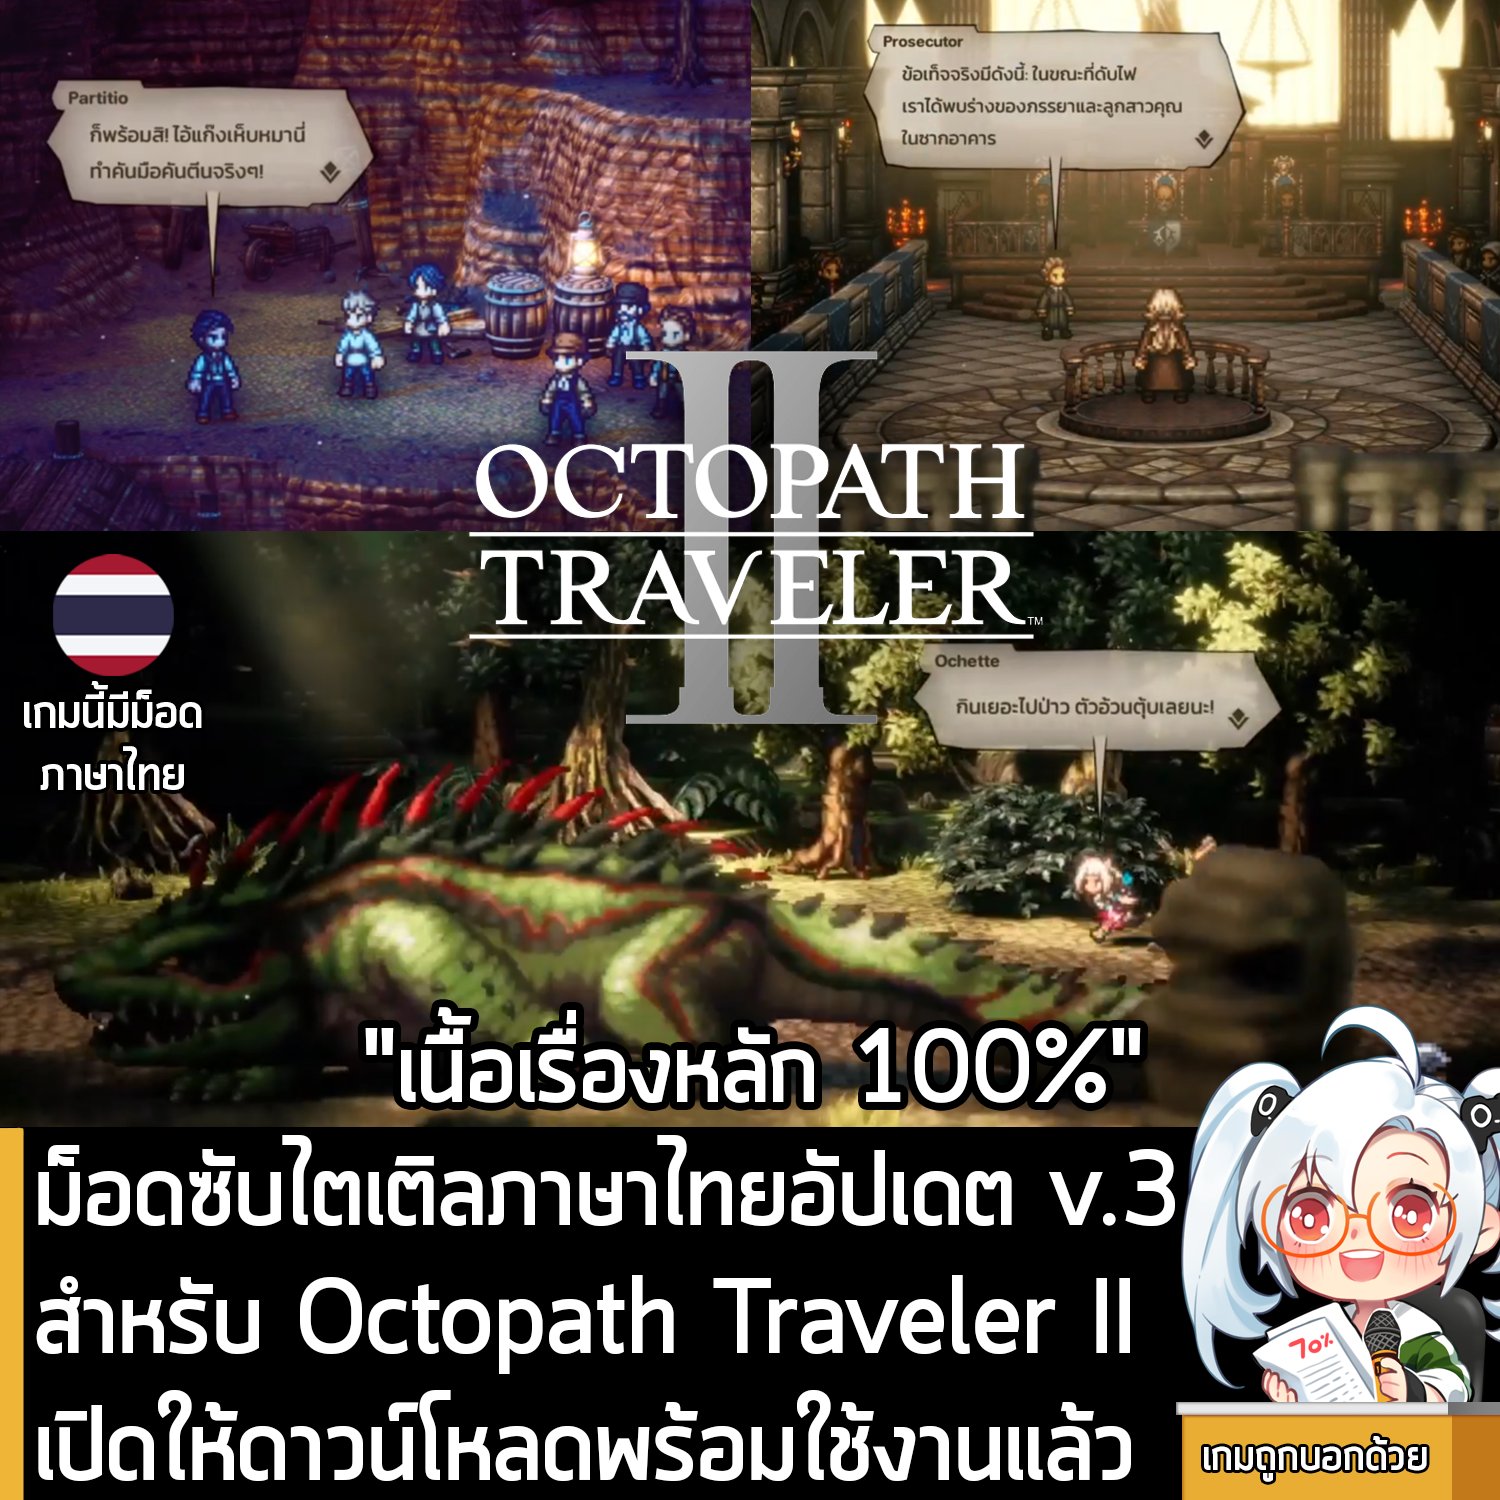 เกมถูกบอกด้วย v.2 - [Mods] artdekdok ประกาศพัฒนาม็อดแปลภาษาไทยของ